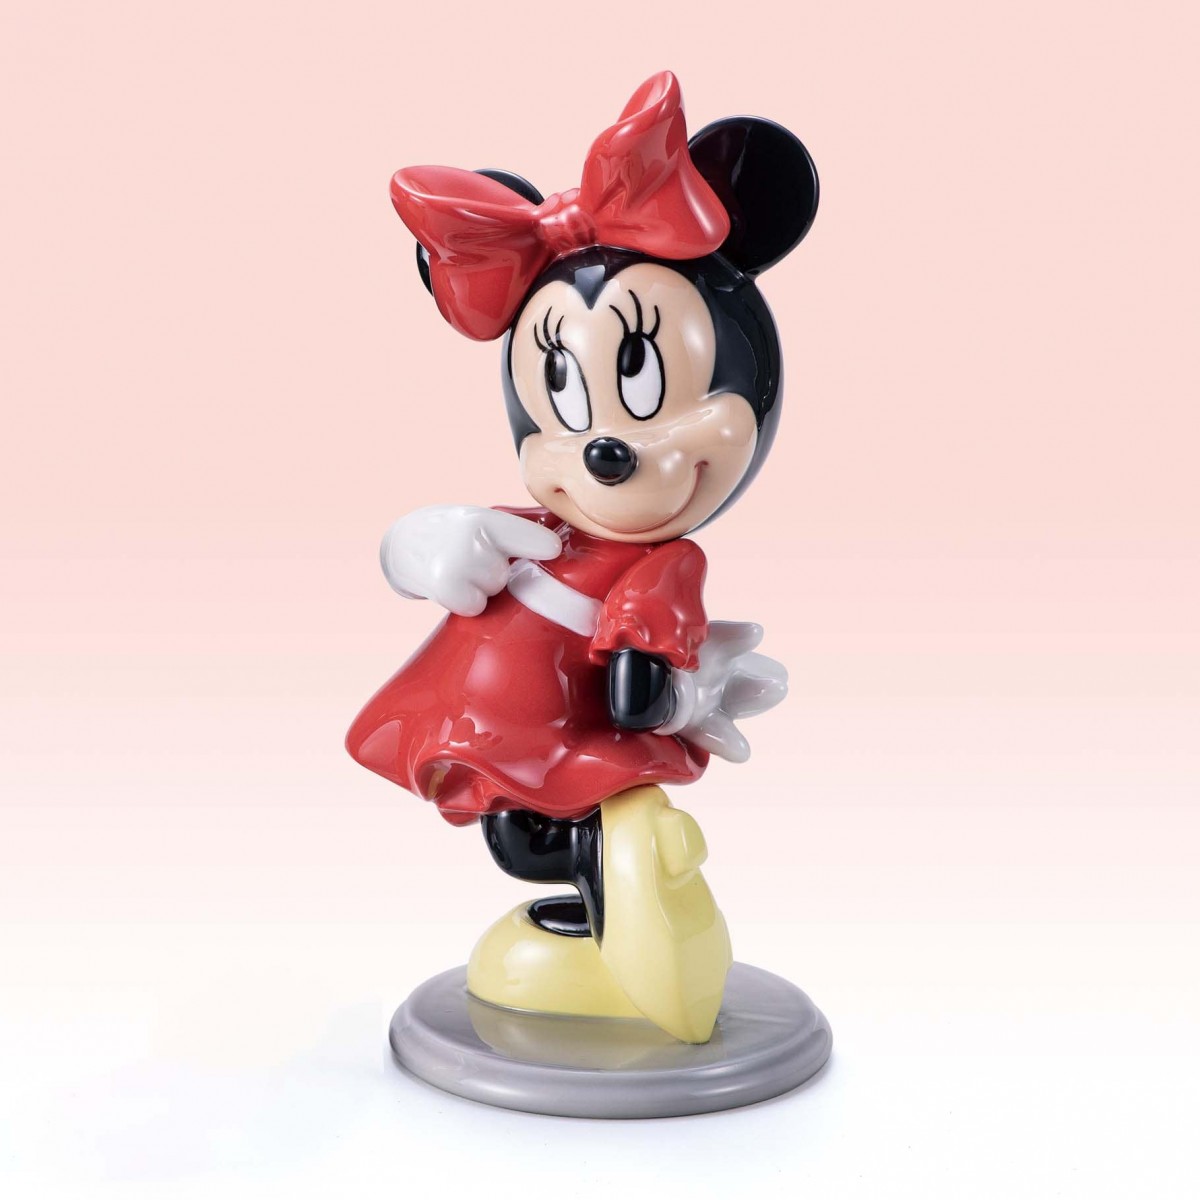 ディズニー生誕75周年記念 1000個限定 ミッキーマウス陶器フィギュア 